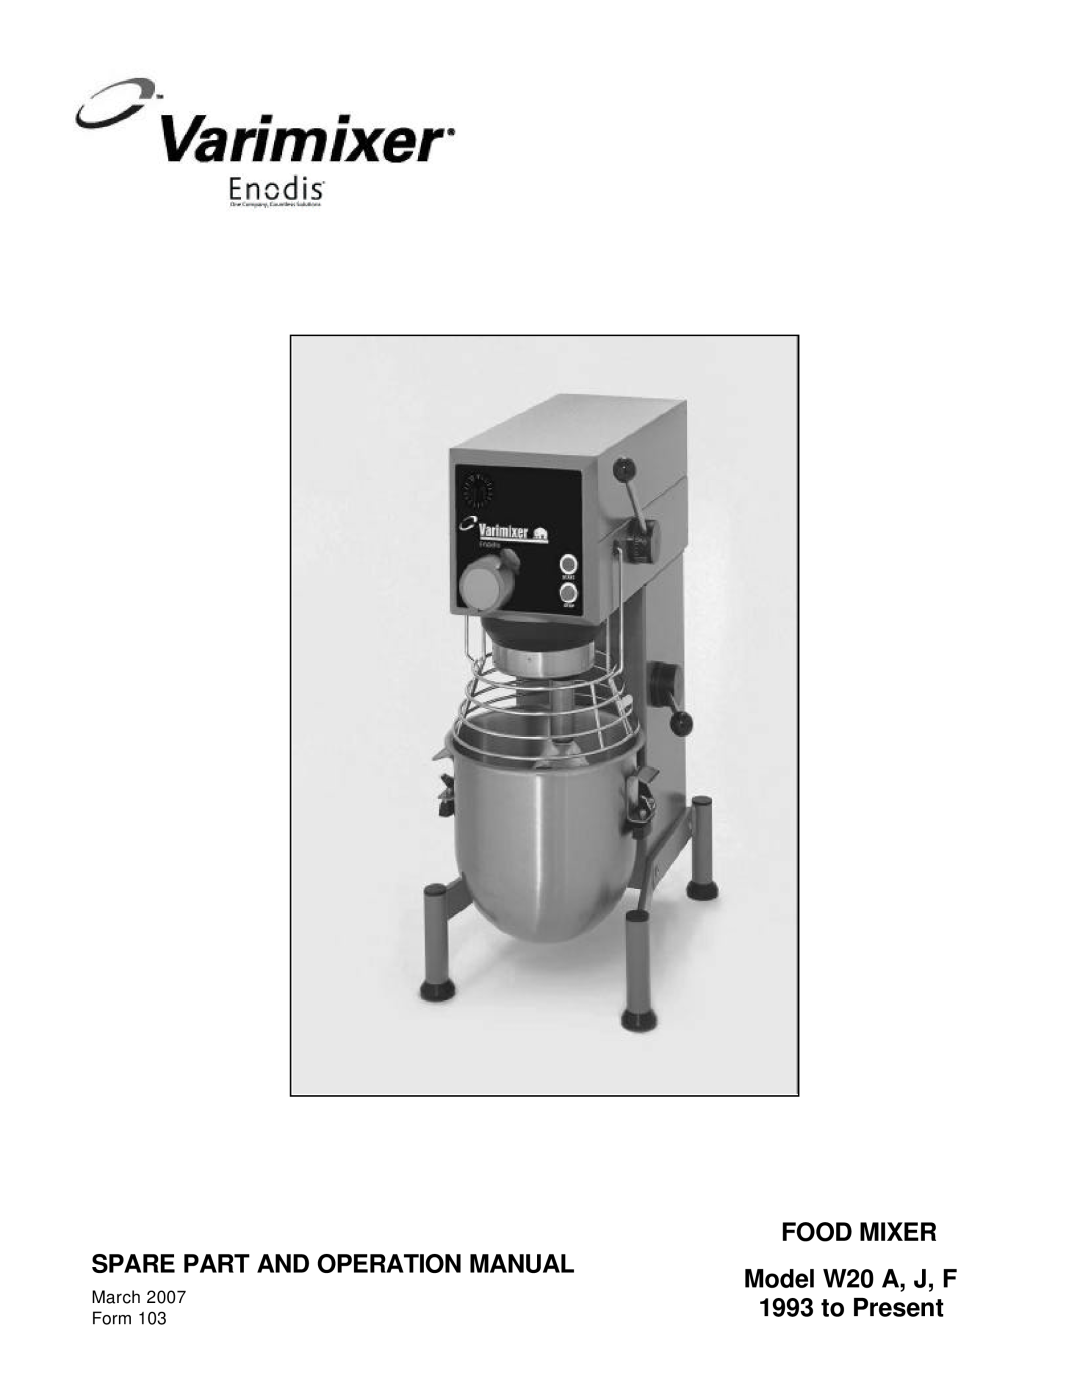 Varimixer W20 J, W20 F operation manual Food Mixer, Model W20 A, J, F, to Present 